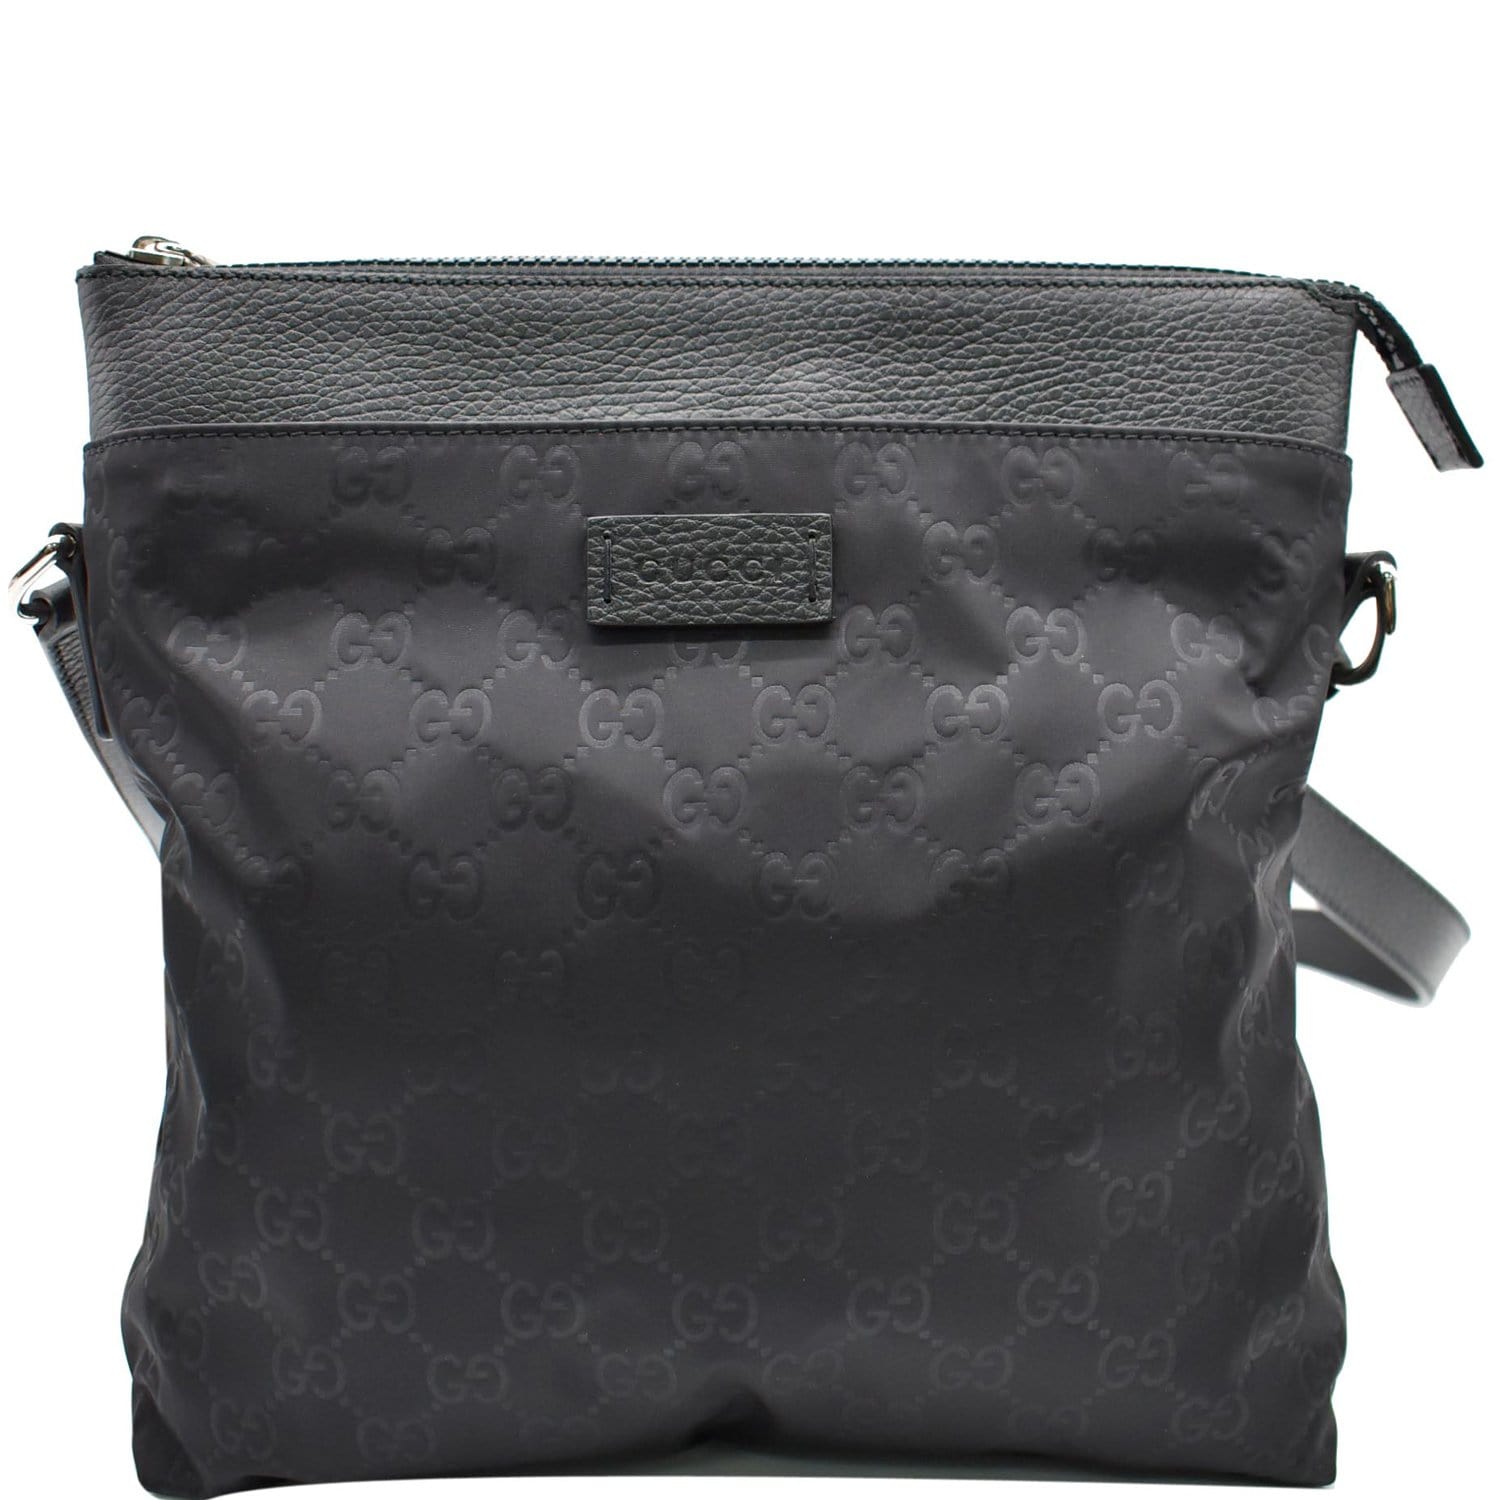 Gucci, Bags, Gucci Messenger Bag